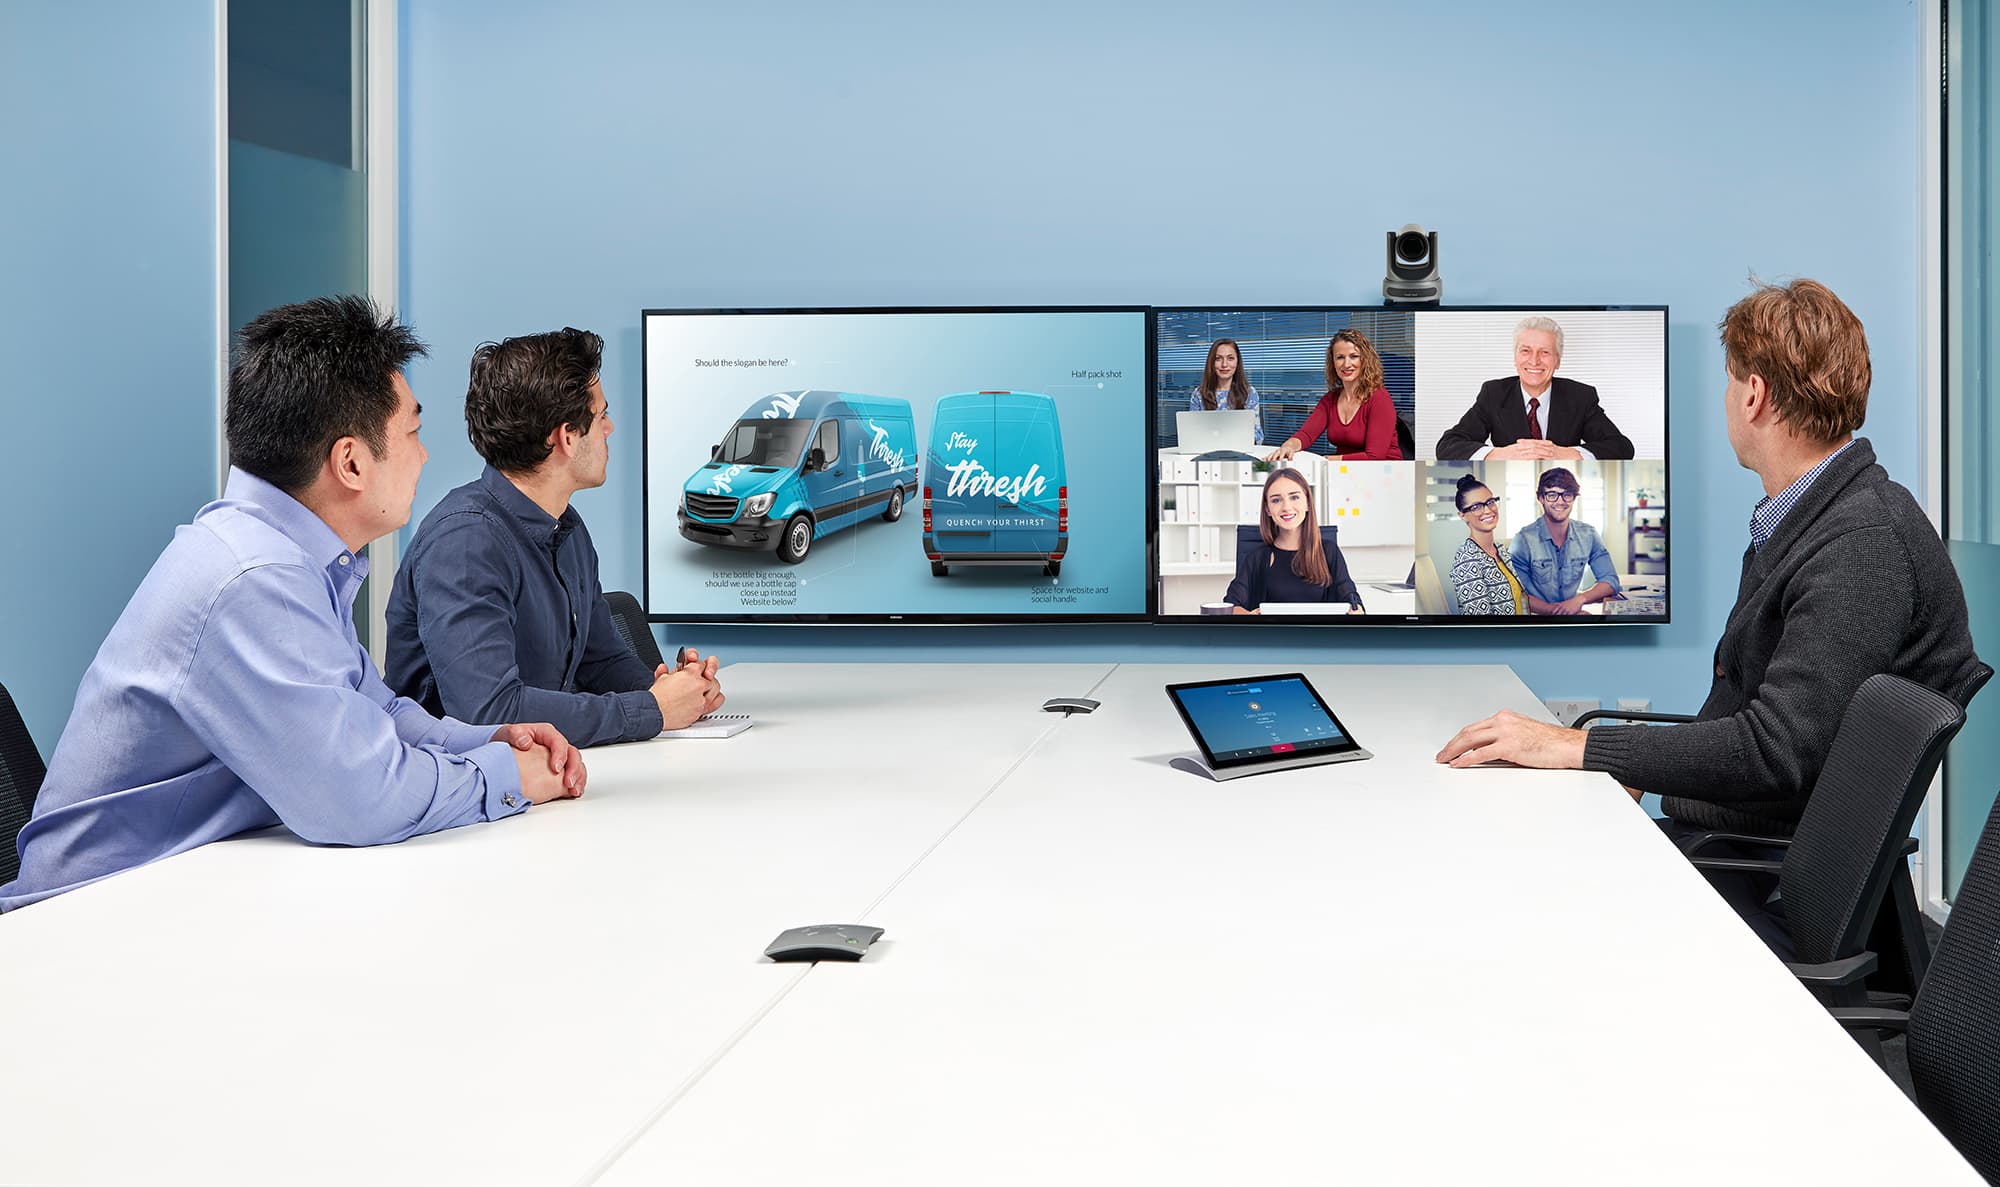 Starleaf Videoconferencing